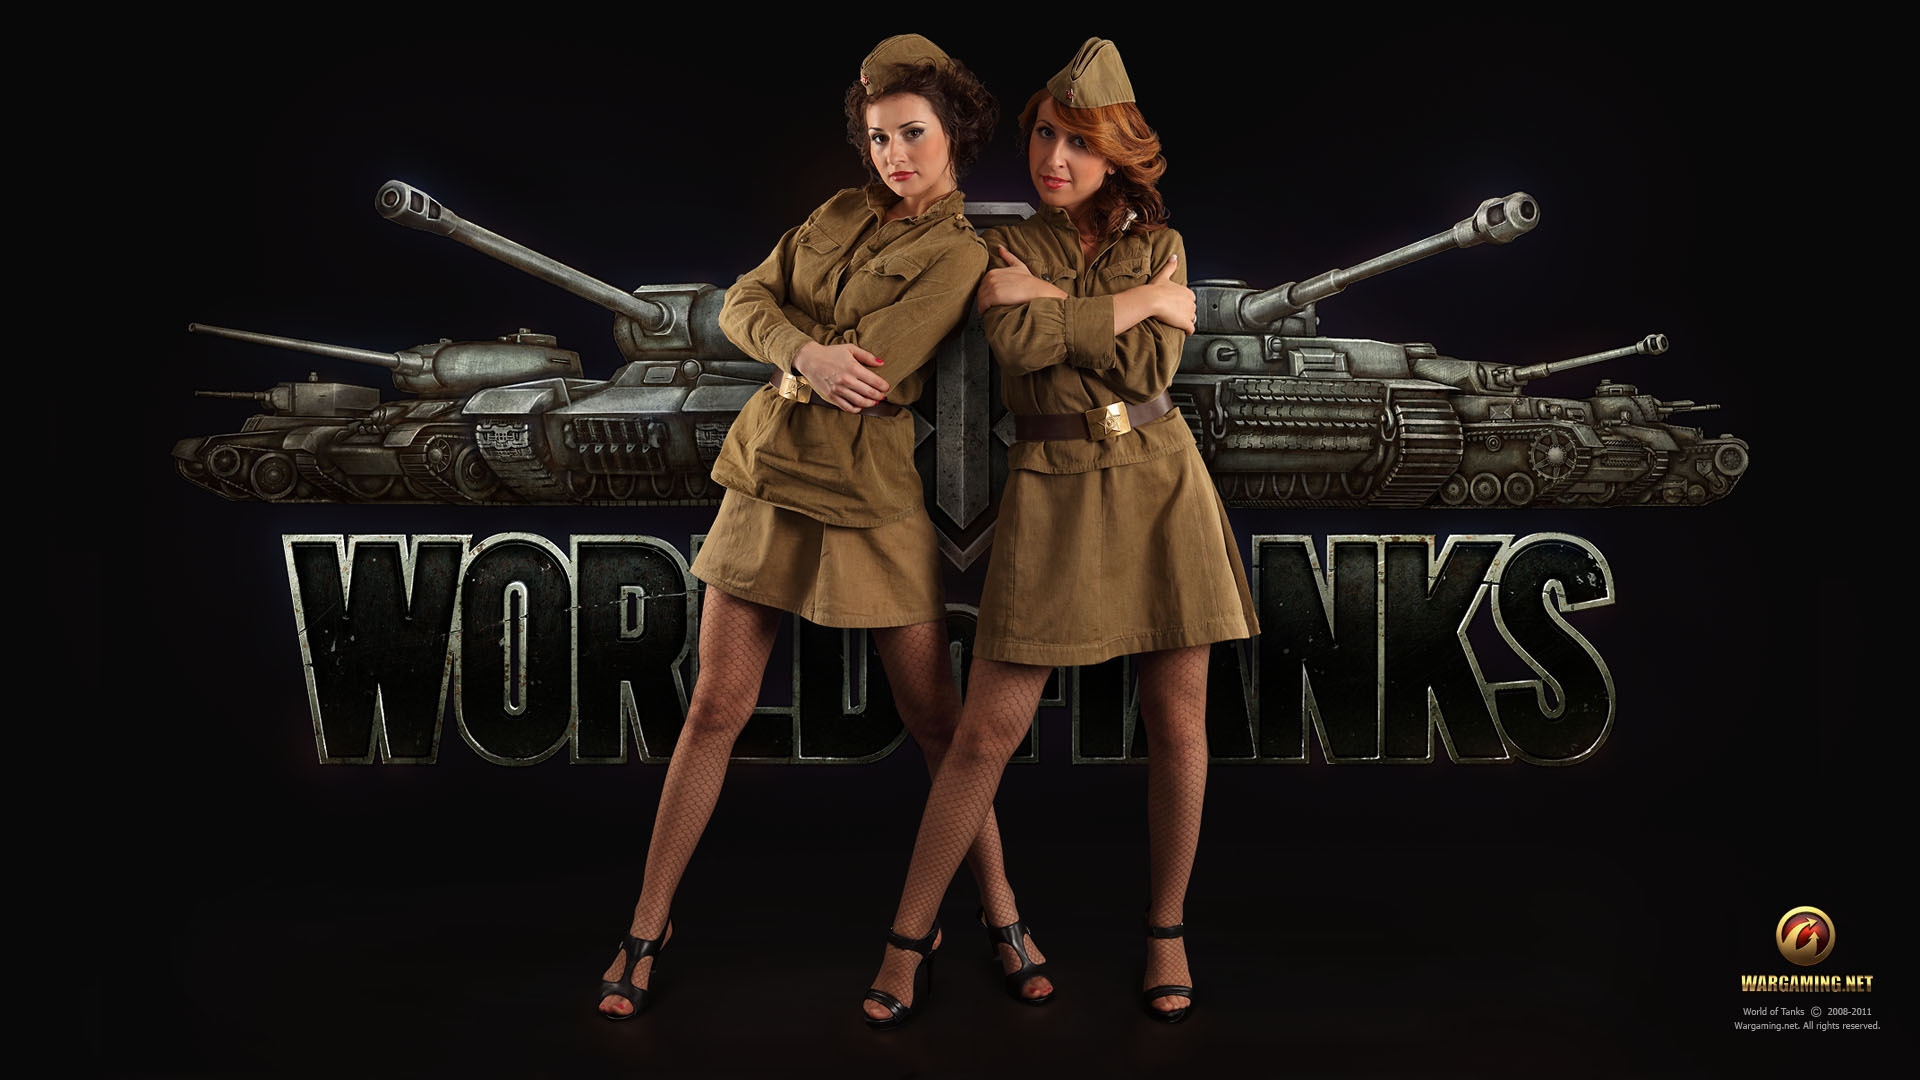 World of Tanks Girls for 1920 x 1080 HDTV 1080p resolution